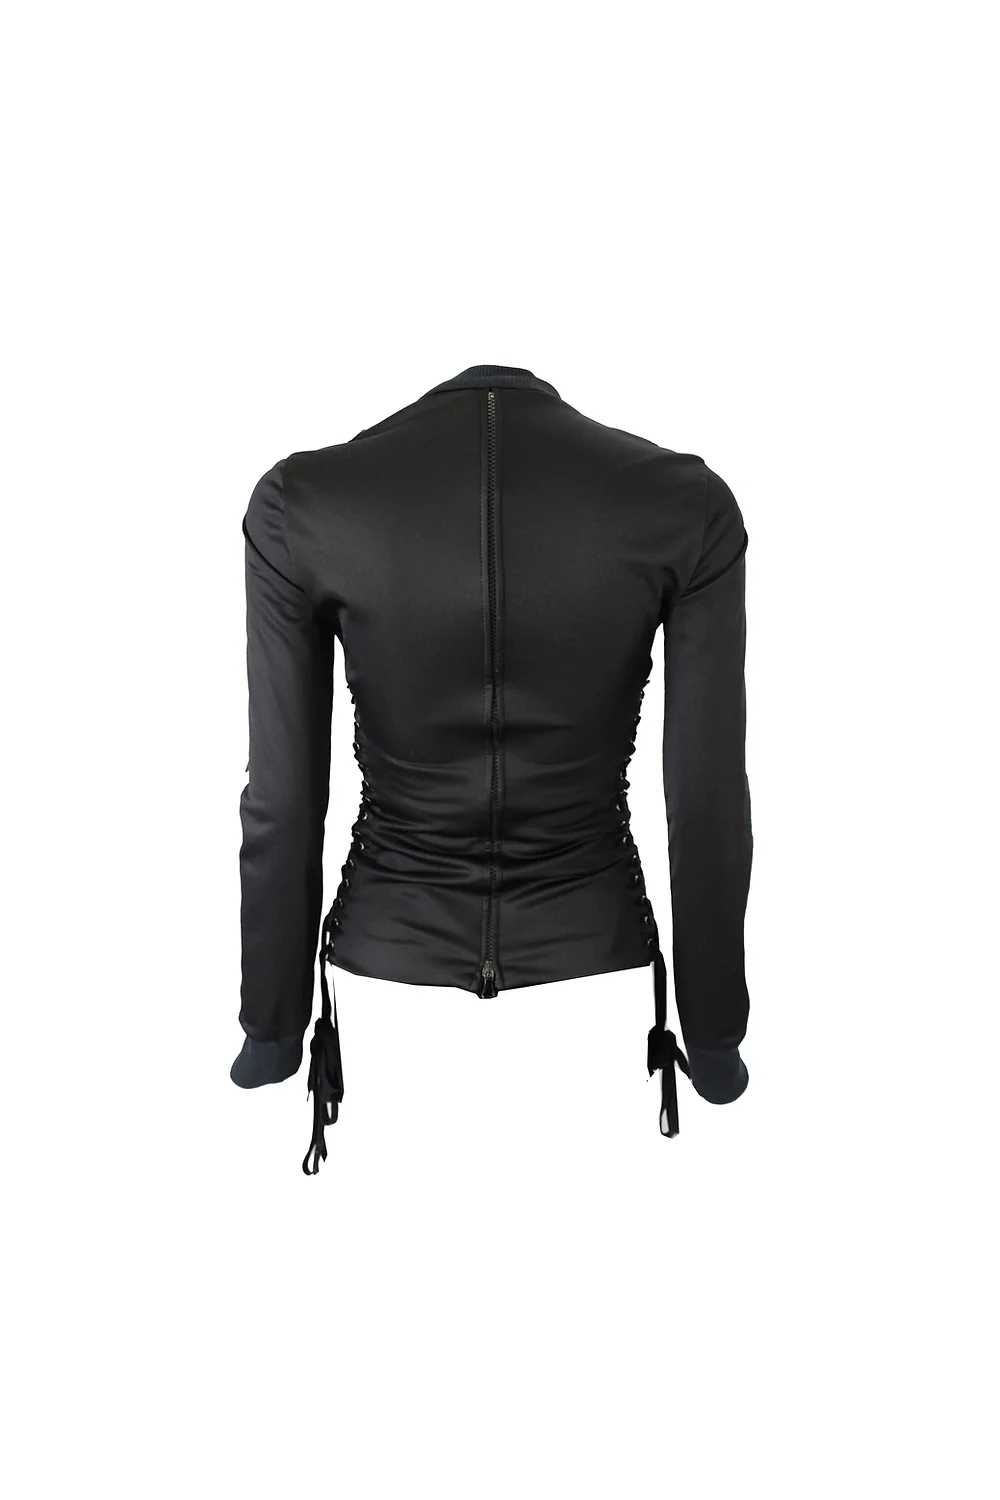 Dolce & Gabbana Black Corset Lace Up Jacket - image 3